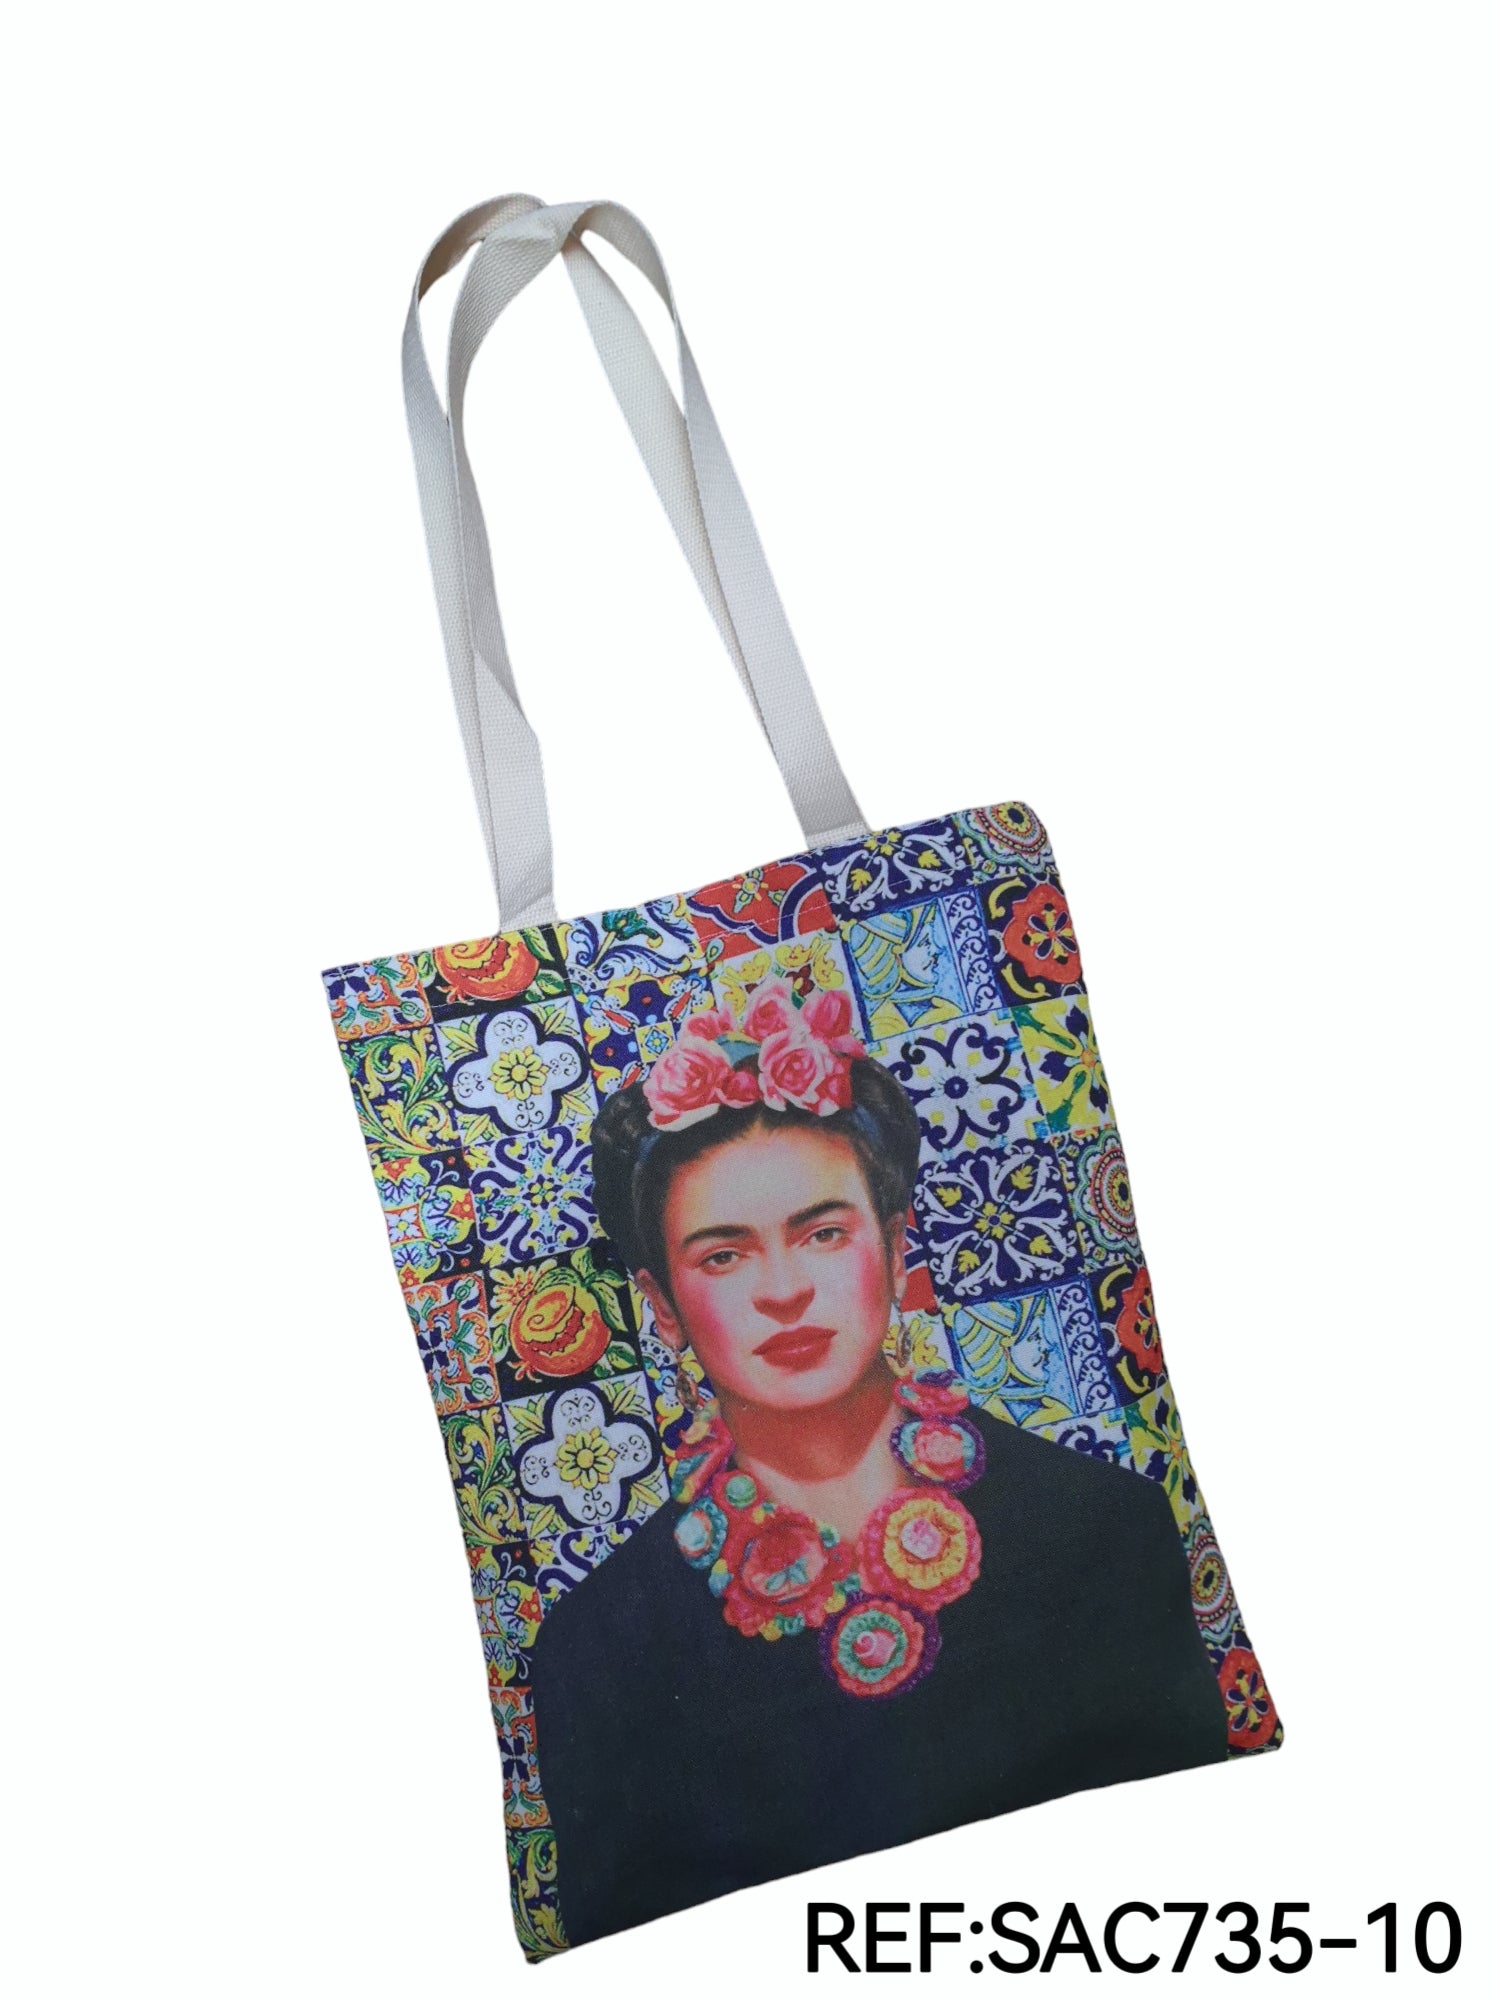 Sac tote bag Frida Kahlo (X3)#10